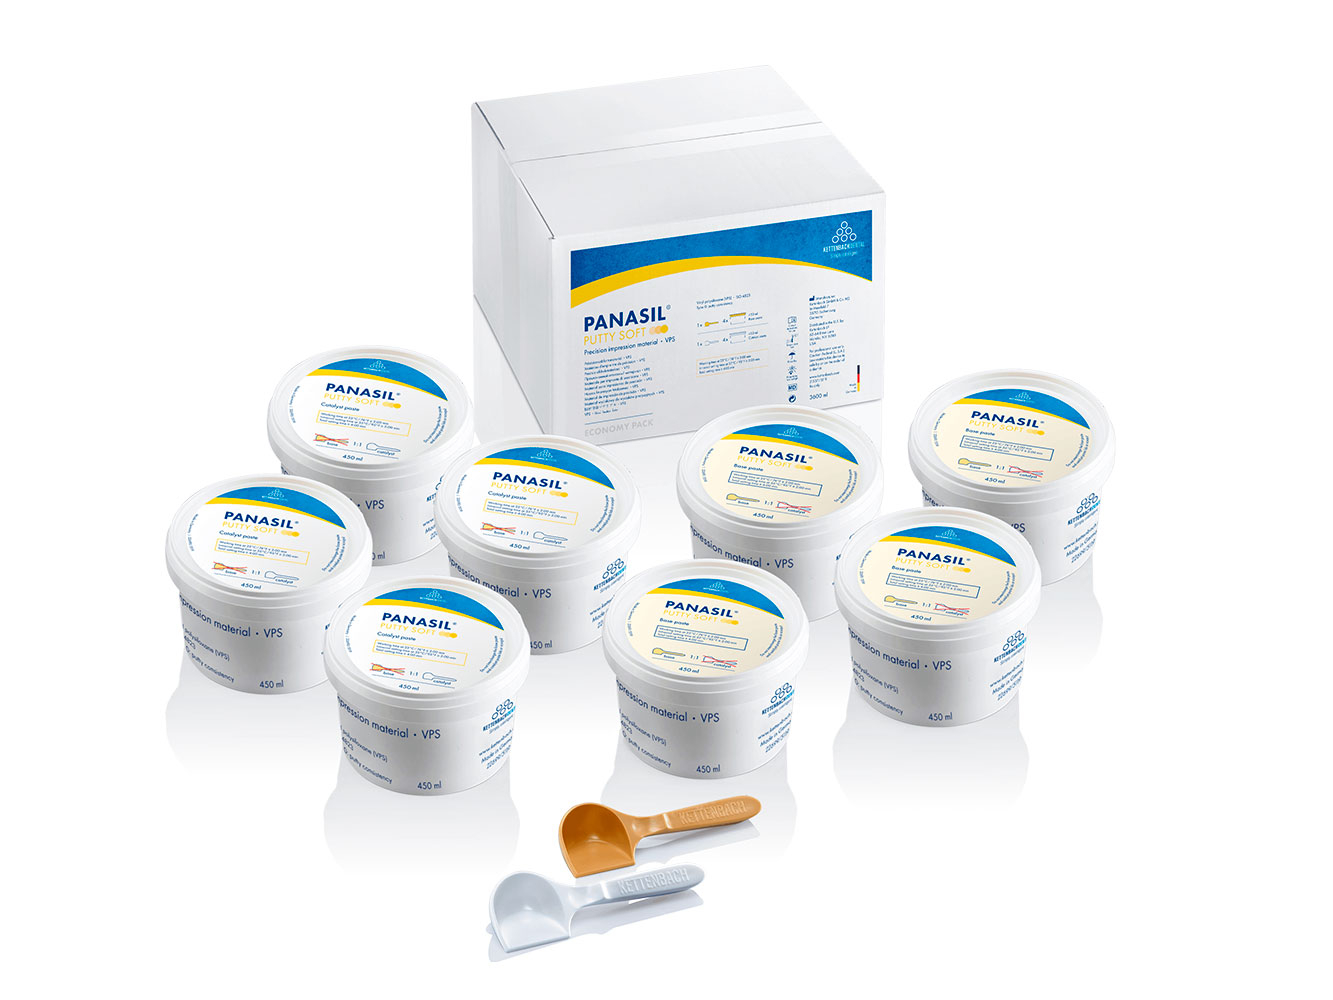 Panasil Putty Soft Economy pack - стоматологический оттискный (слепочный) материал в экономичной упаковке 8 х 450 мл = 3600 мл